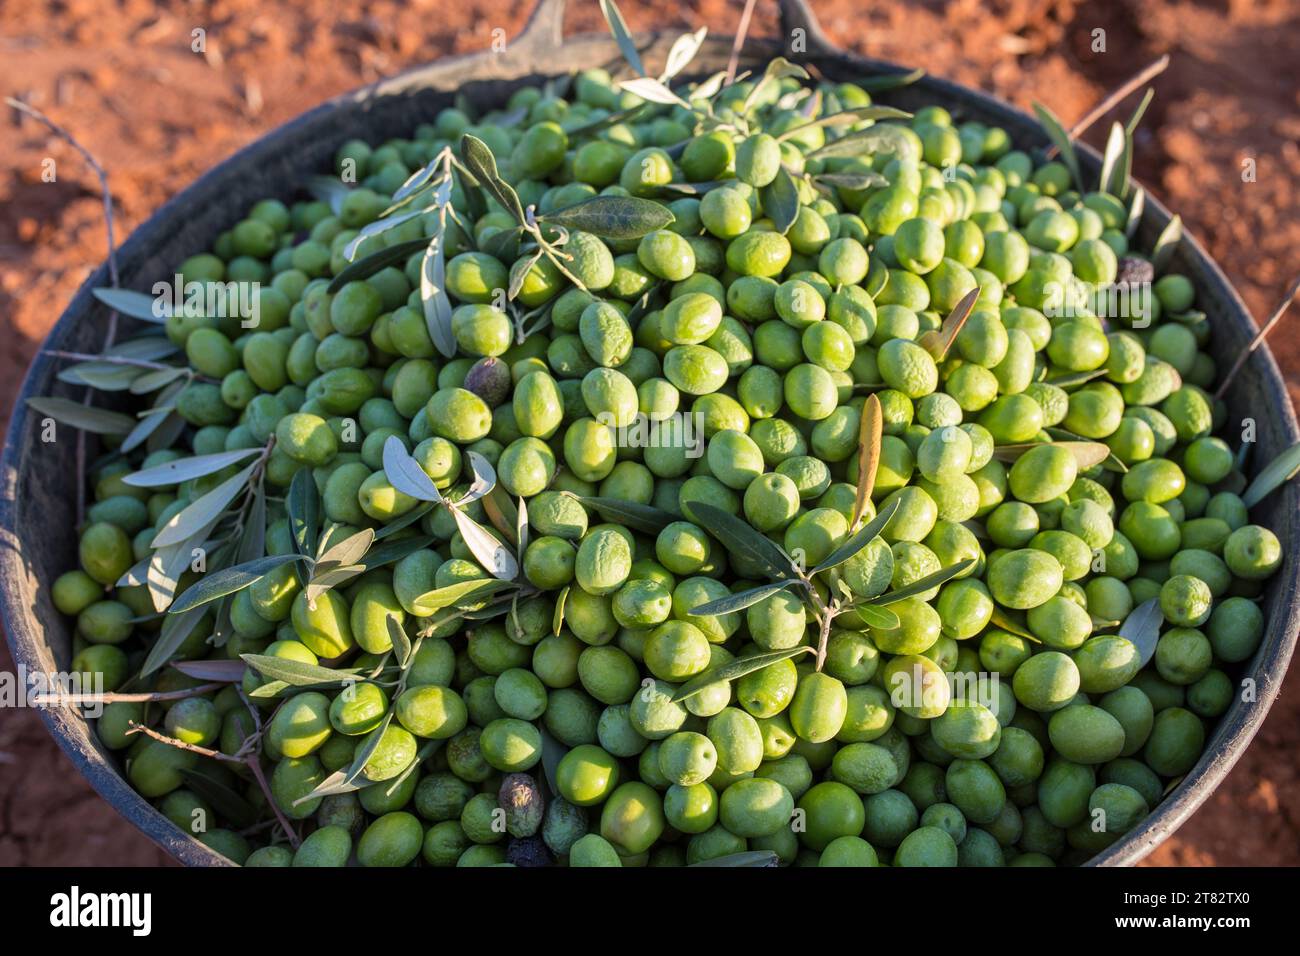 Harvesting bucket full of green olives. Table olives harvest season scene Stock Photo